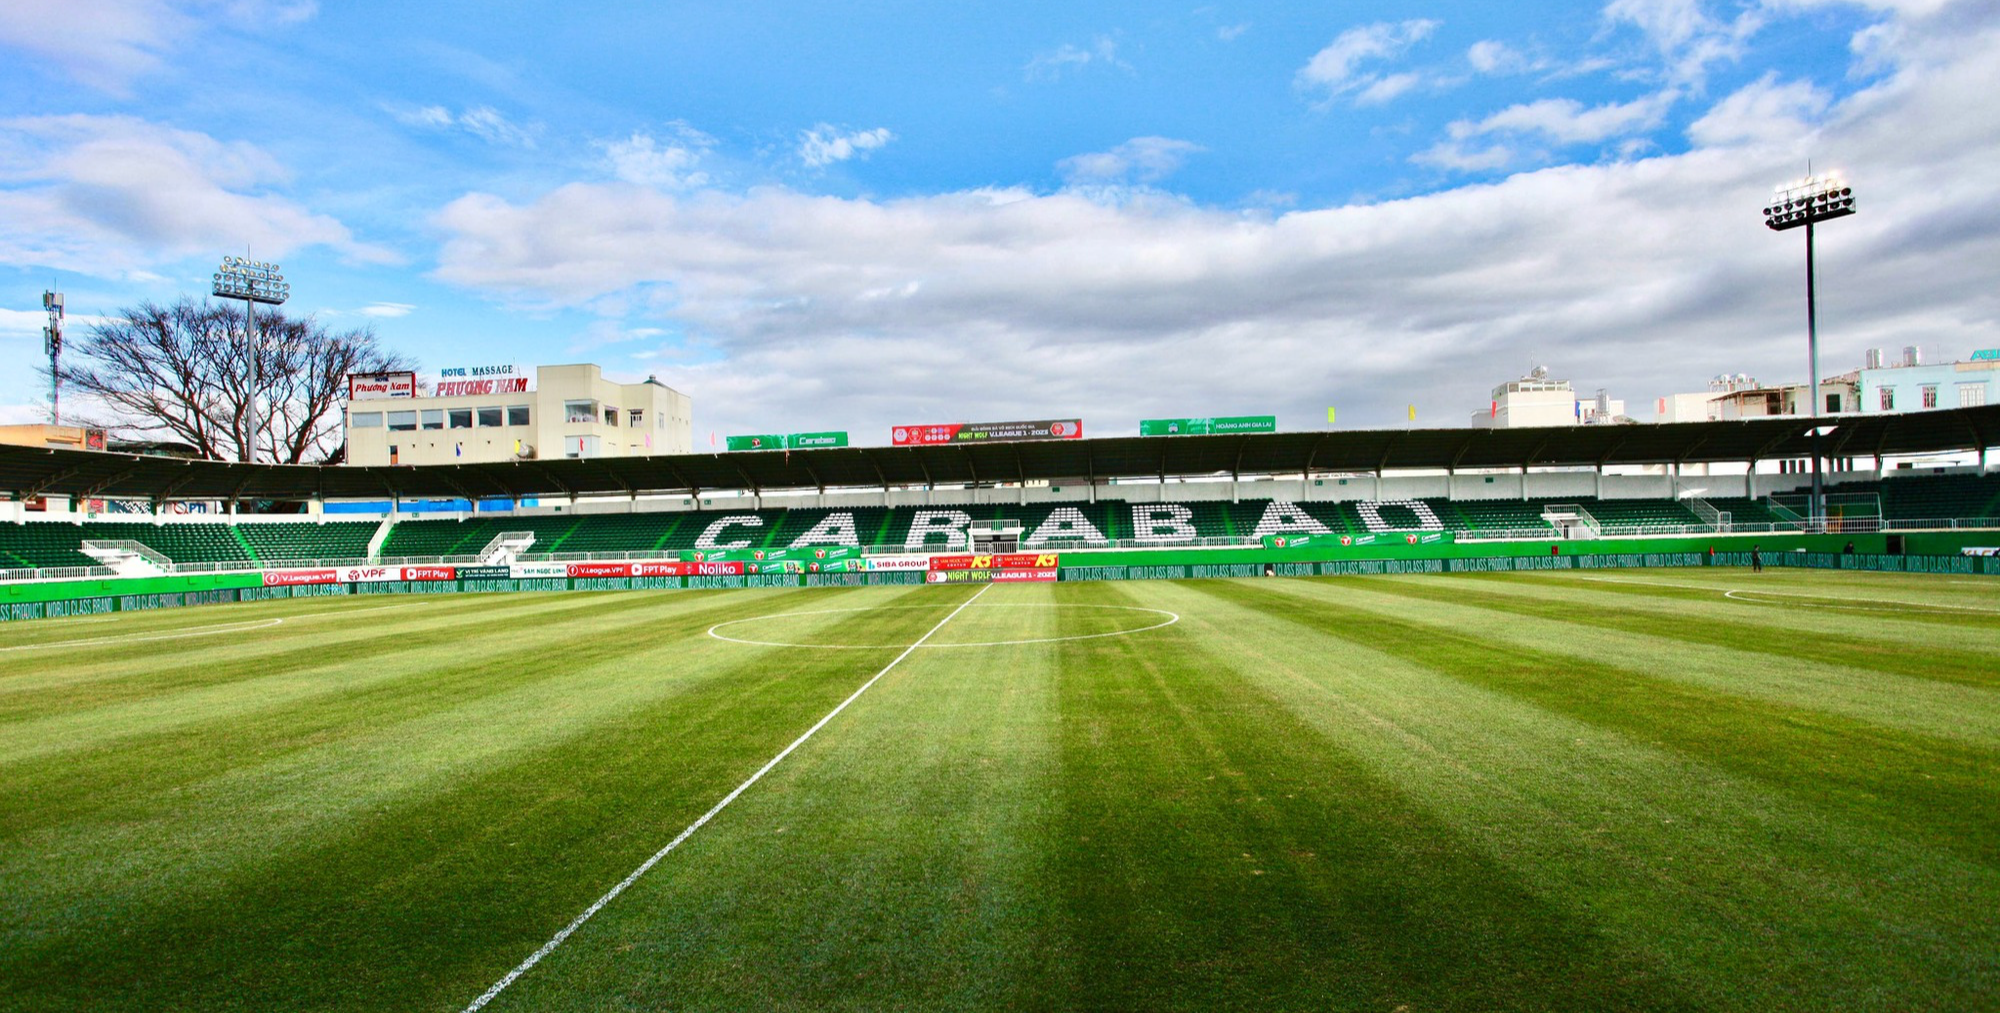 Đã mắt với mặt cỏ xanh mướt của sân nhà HAGL trước trận ra quân V-League - Ảnh 1.